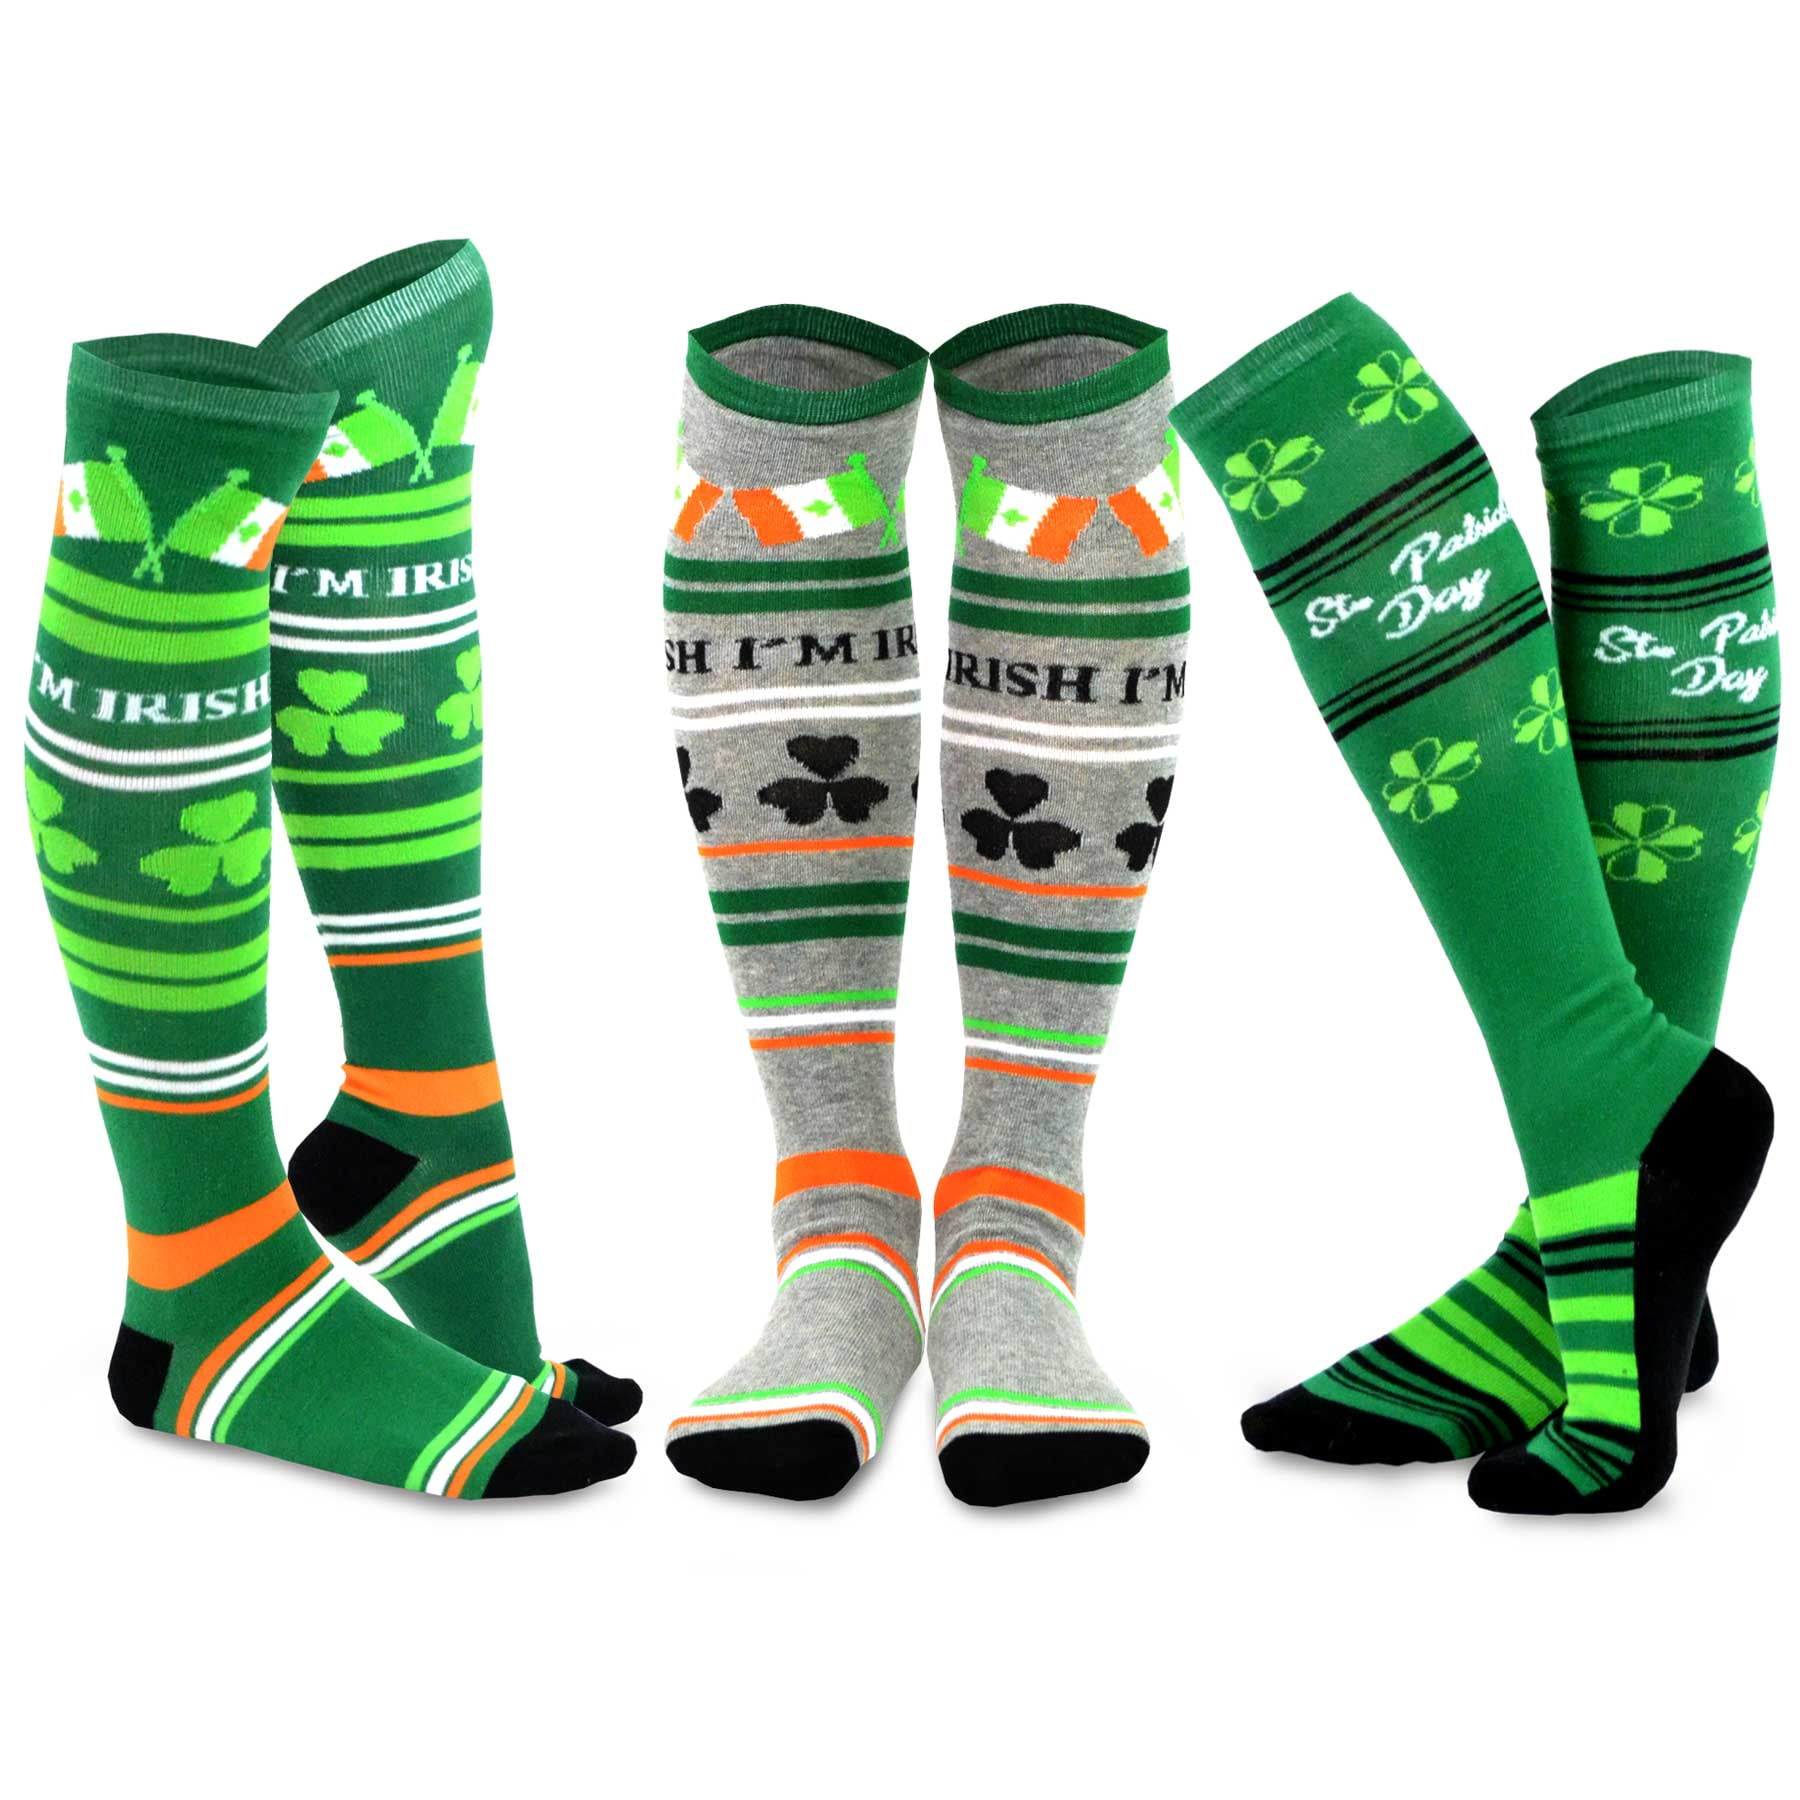 Patricks Day Socks Green Clover Shamrock Striped Knee Stocking Irish Costume Party High Socks for Women Girls 3 Pack St